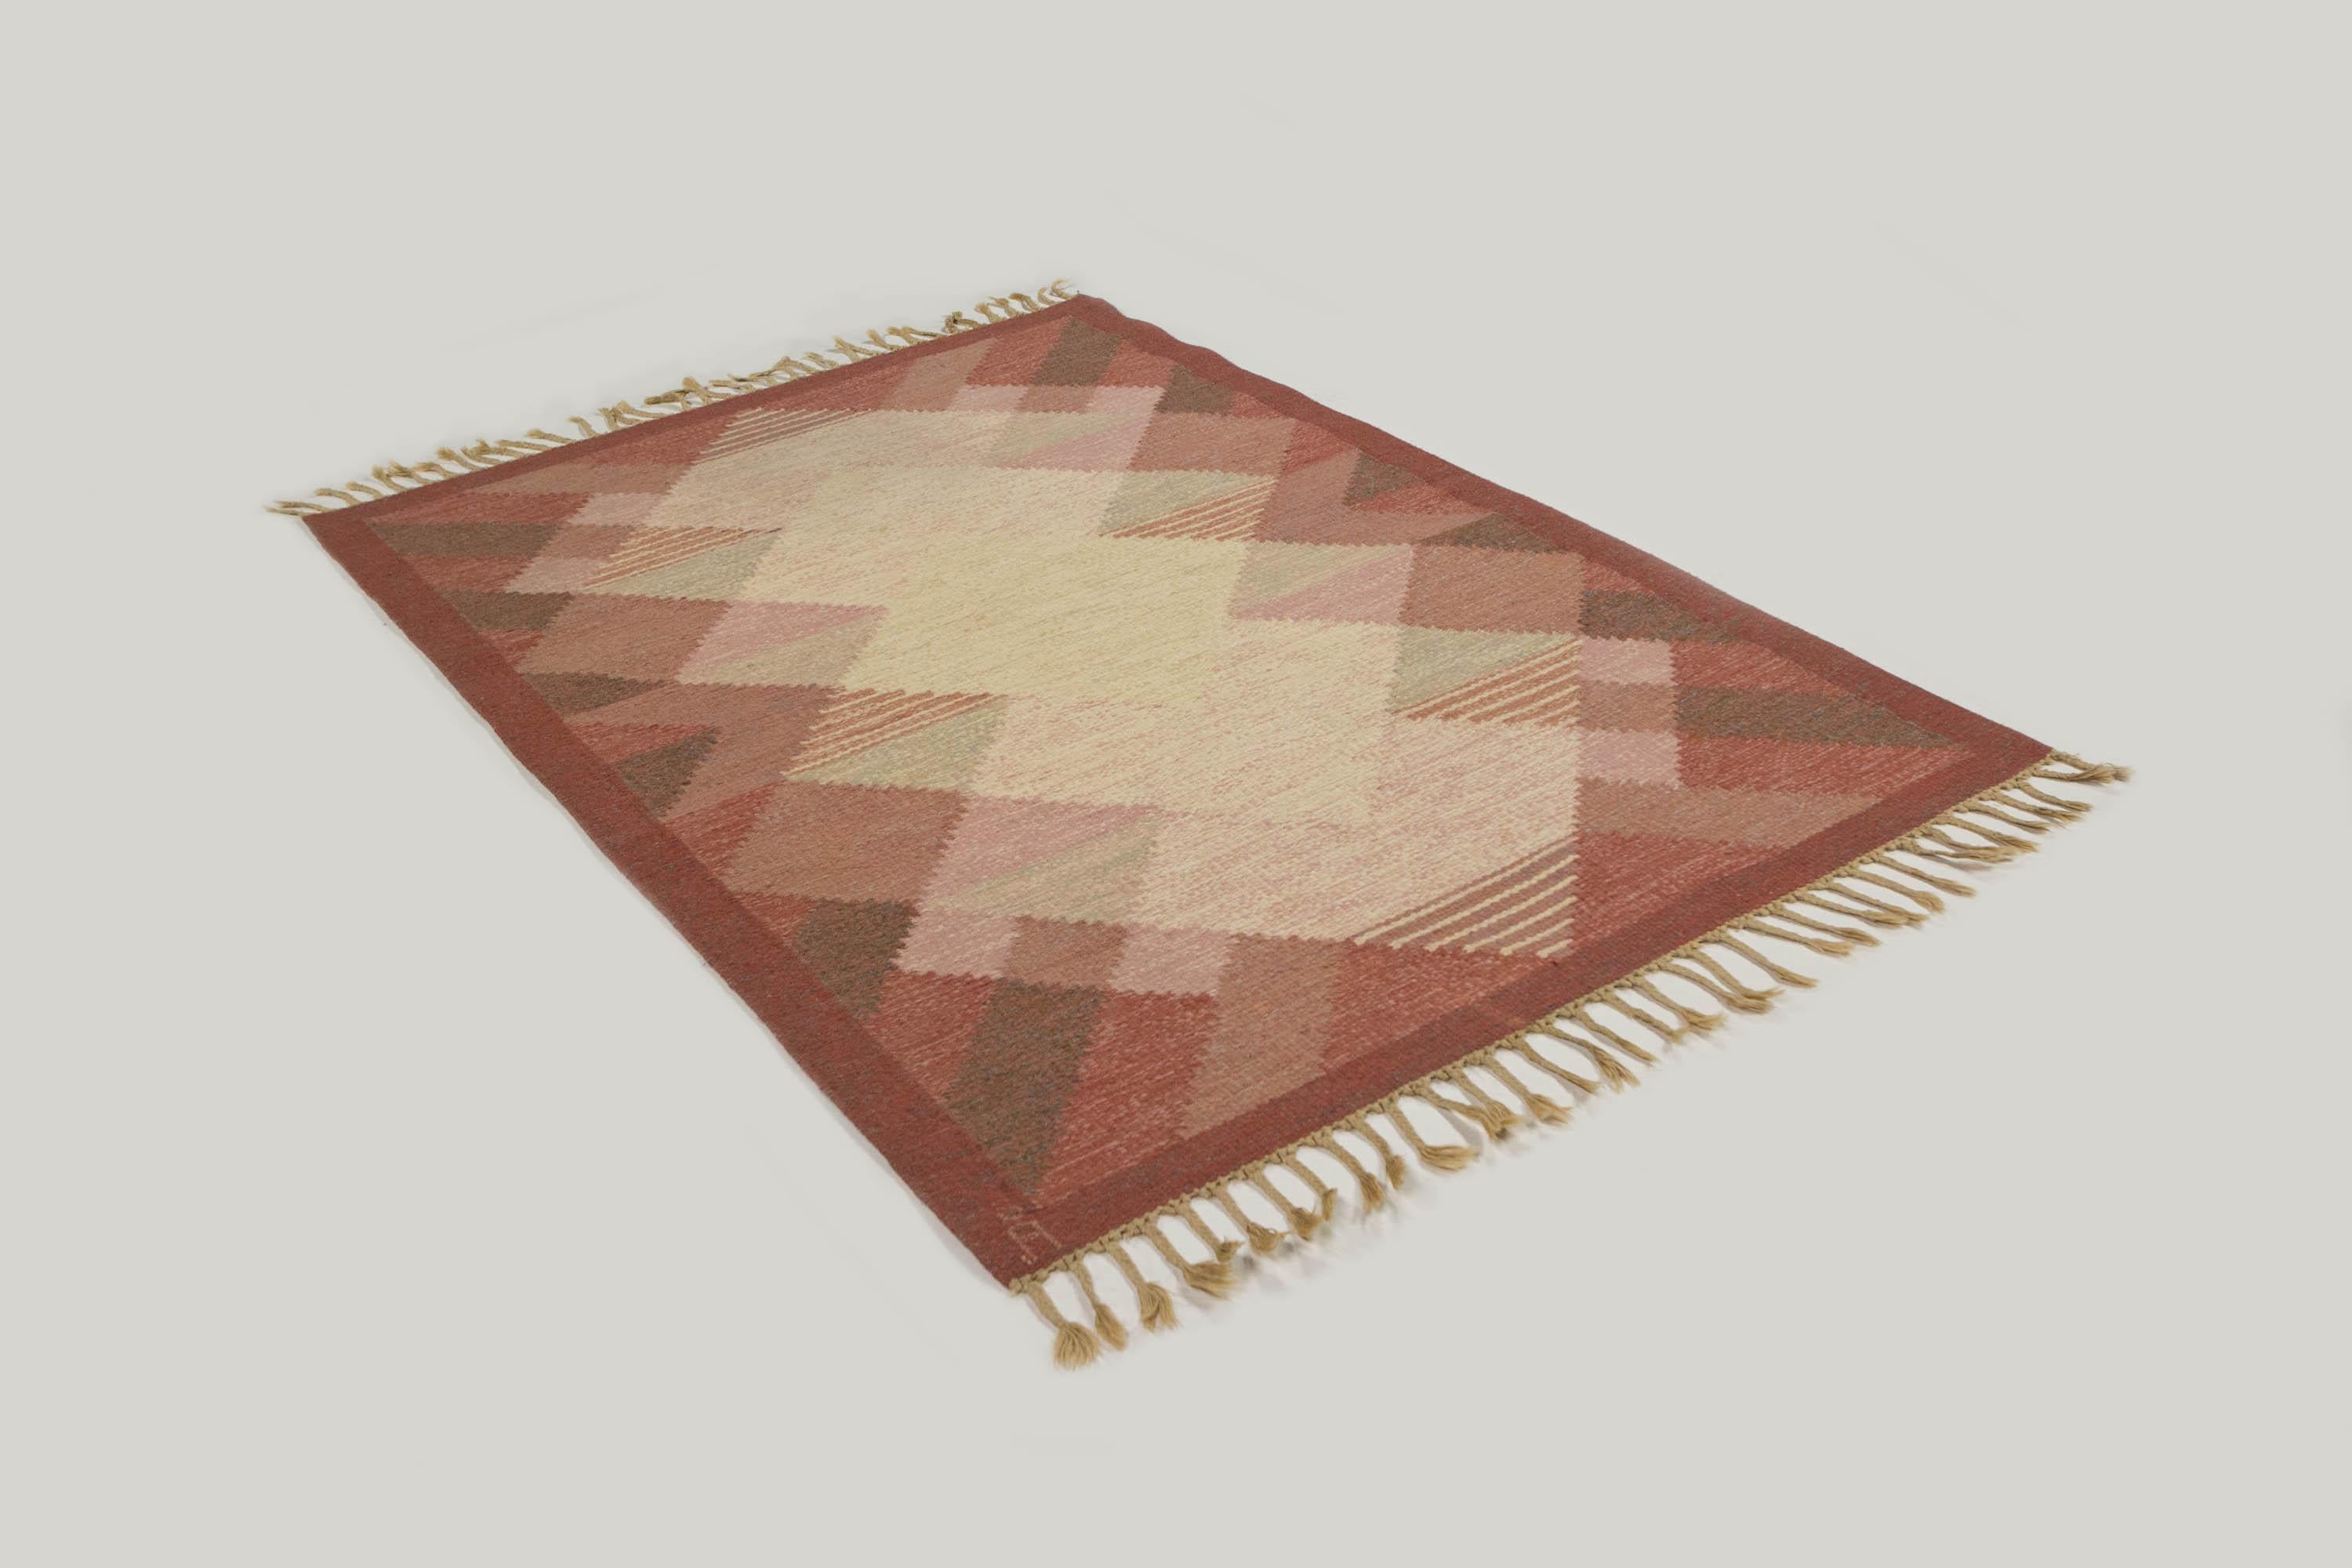 Anna Johanna ngstrm Schwedischer Rlakan-Teppich mit rosa geometrischem Muster, 1960er Jahre (Handgewebt)